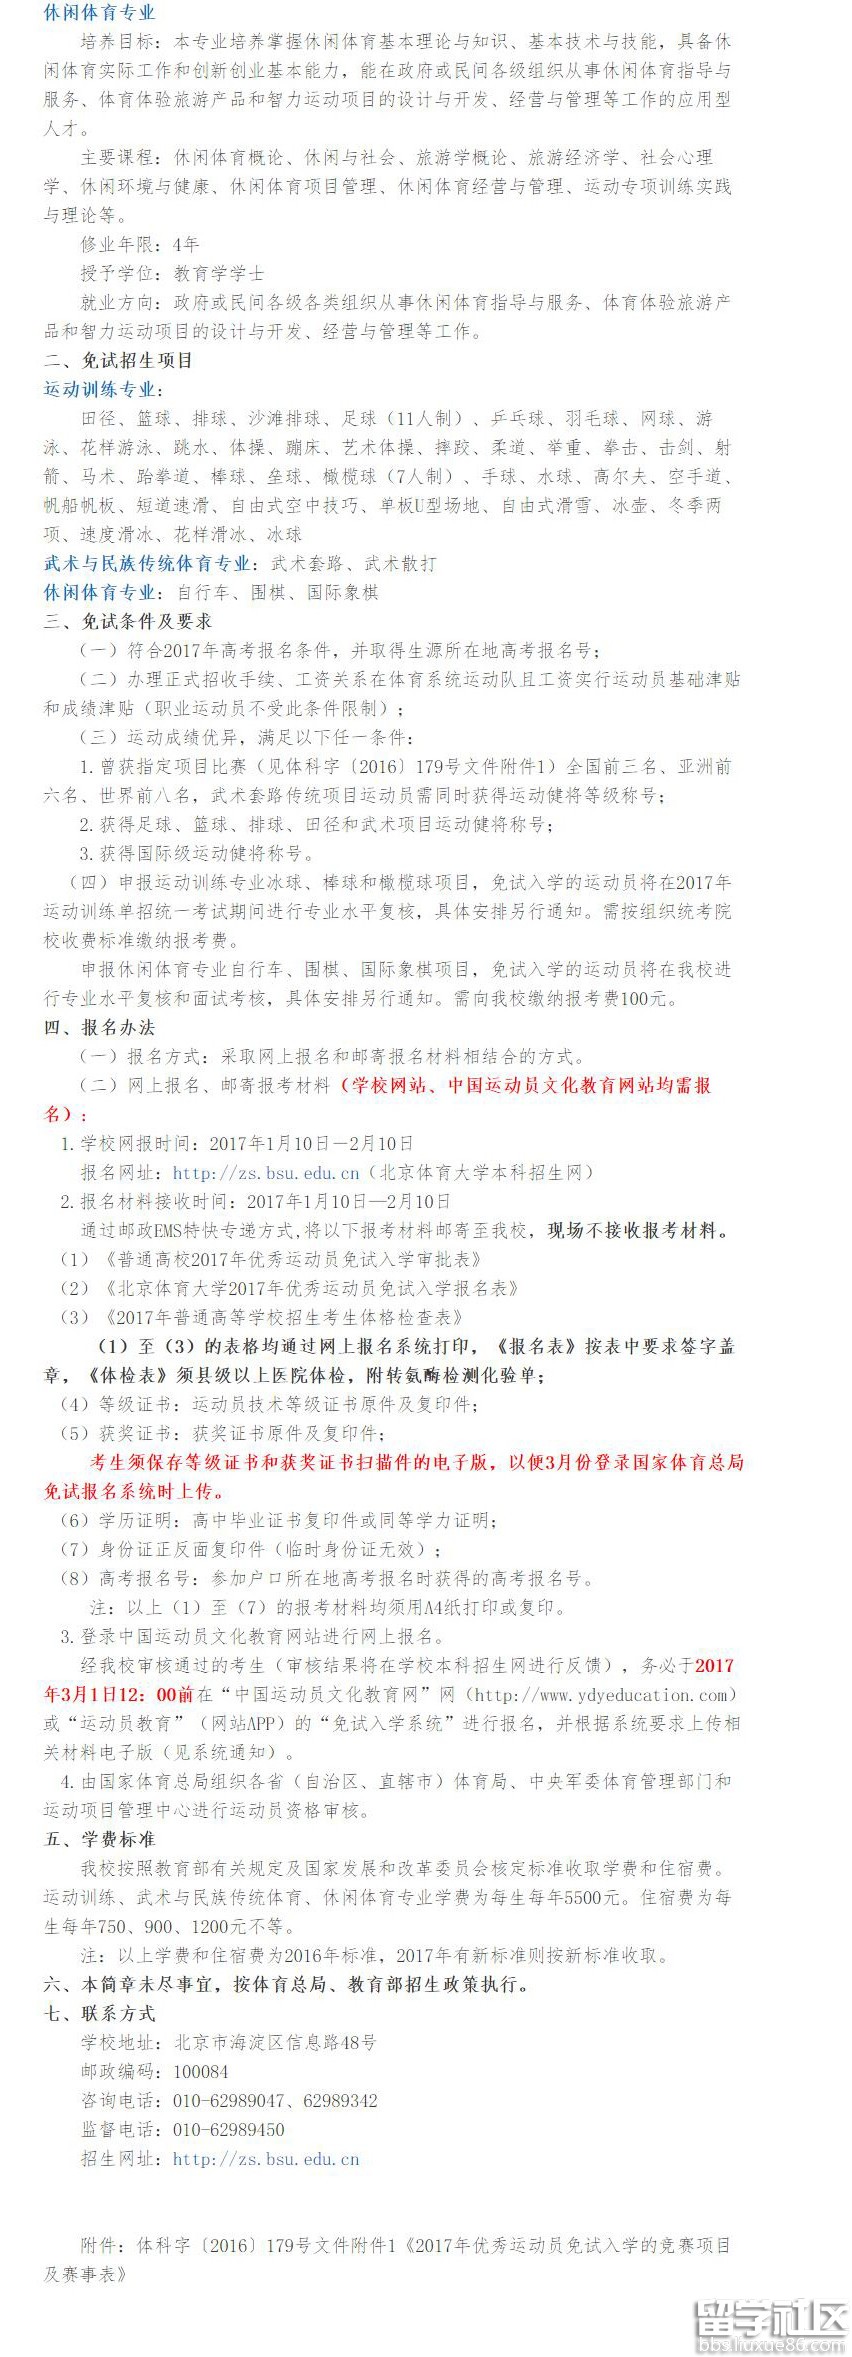 北京体育大学2017优秀运动员免试入学招生简章